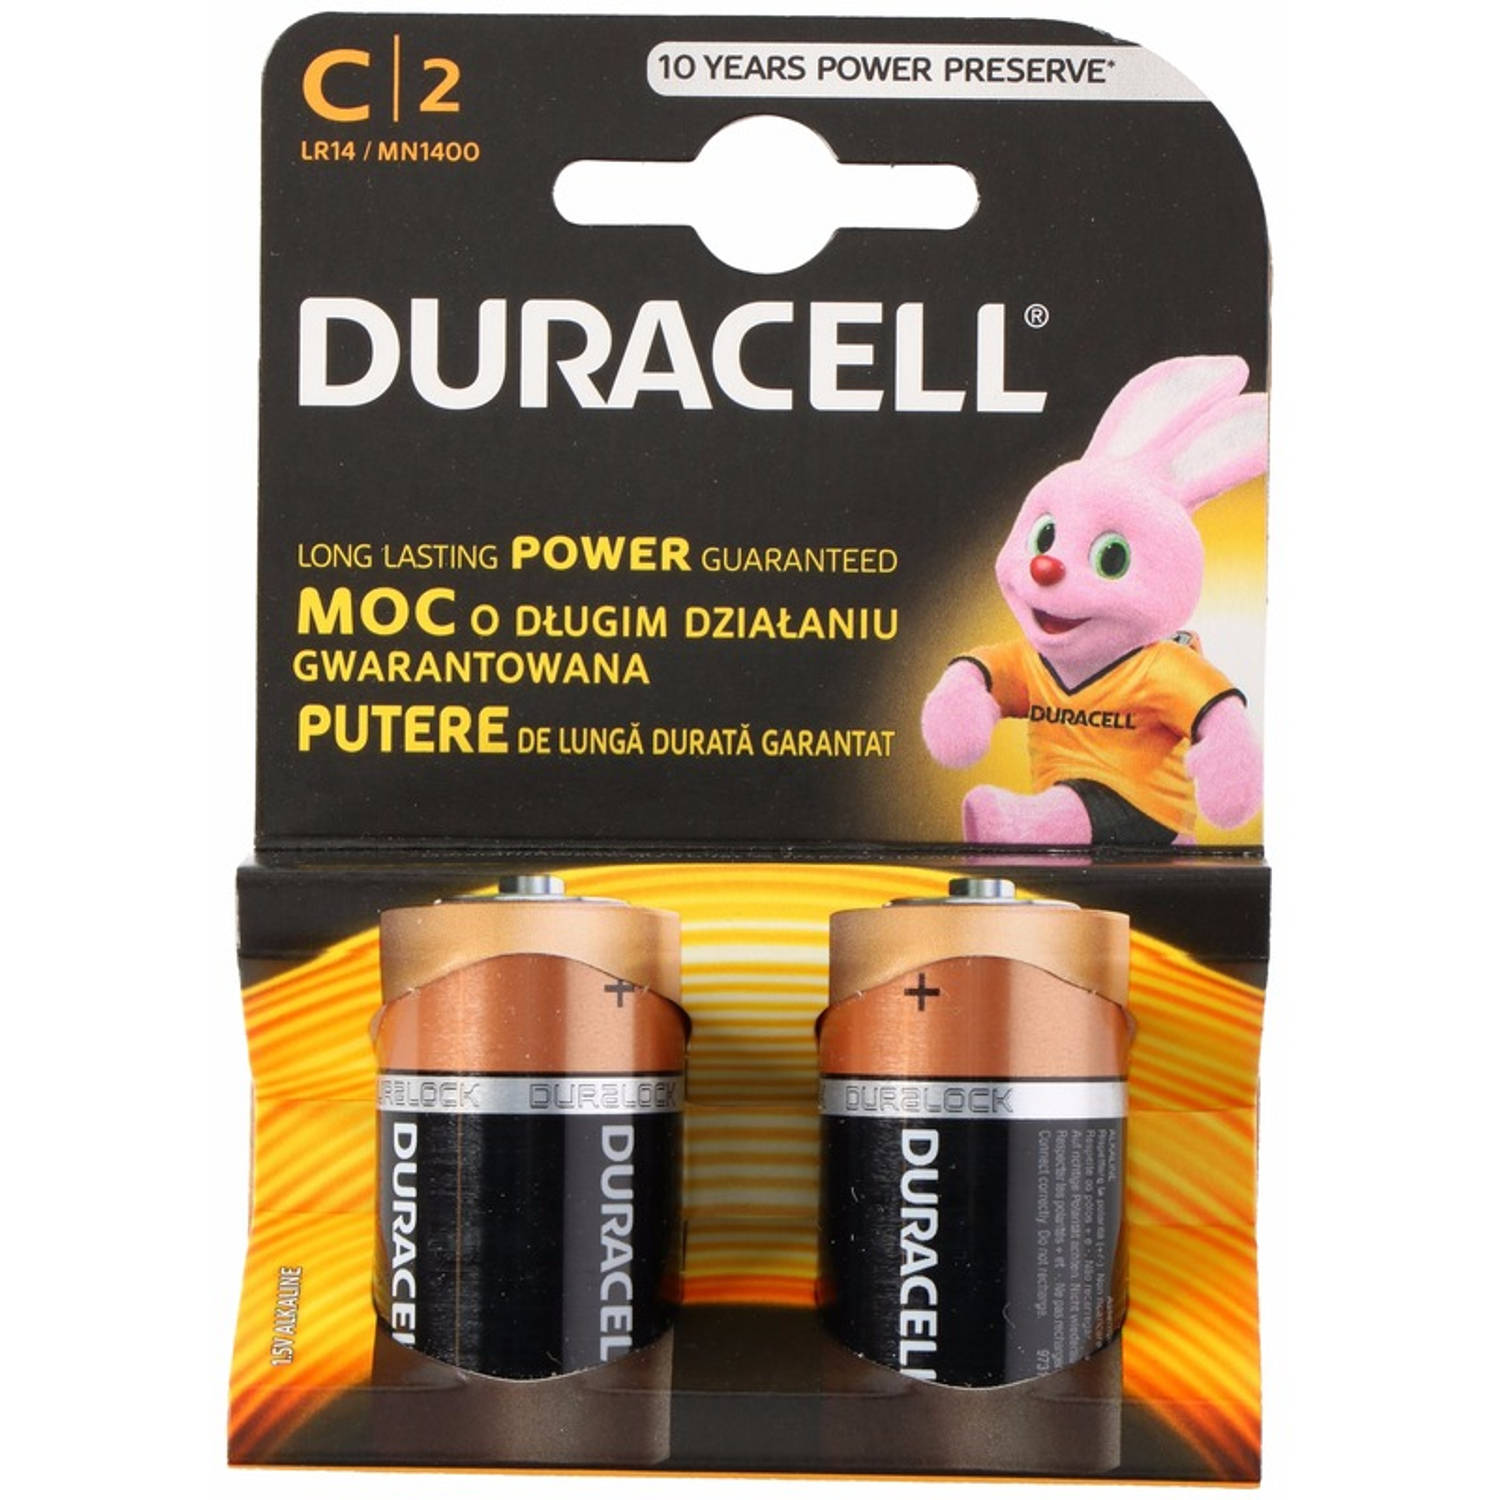 Duracell alkalnine batterijen CR14 6 stuks - Batterijen